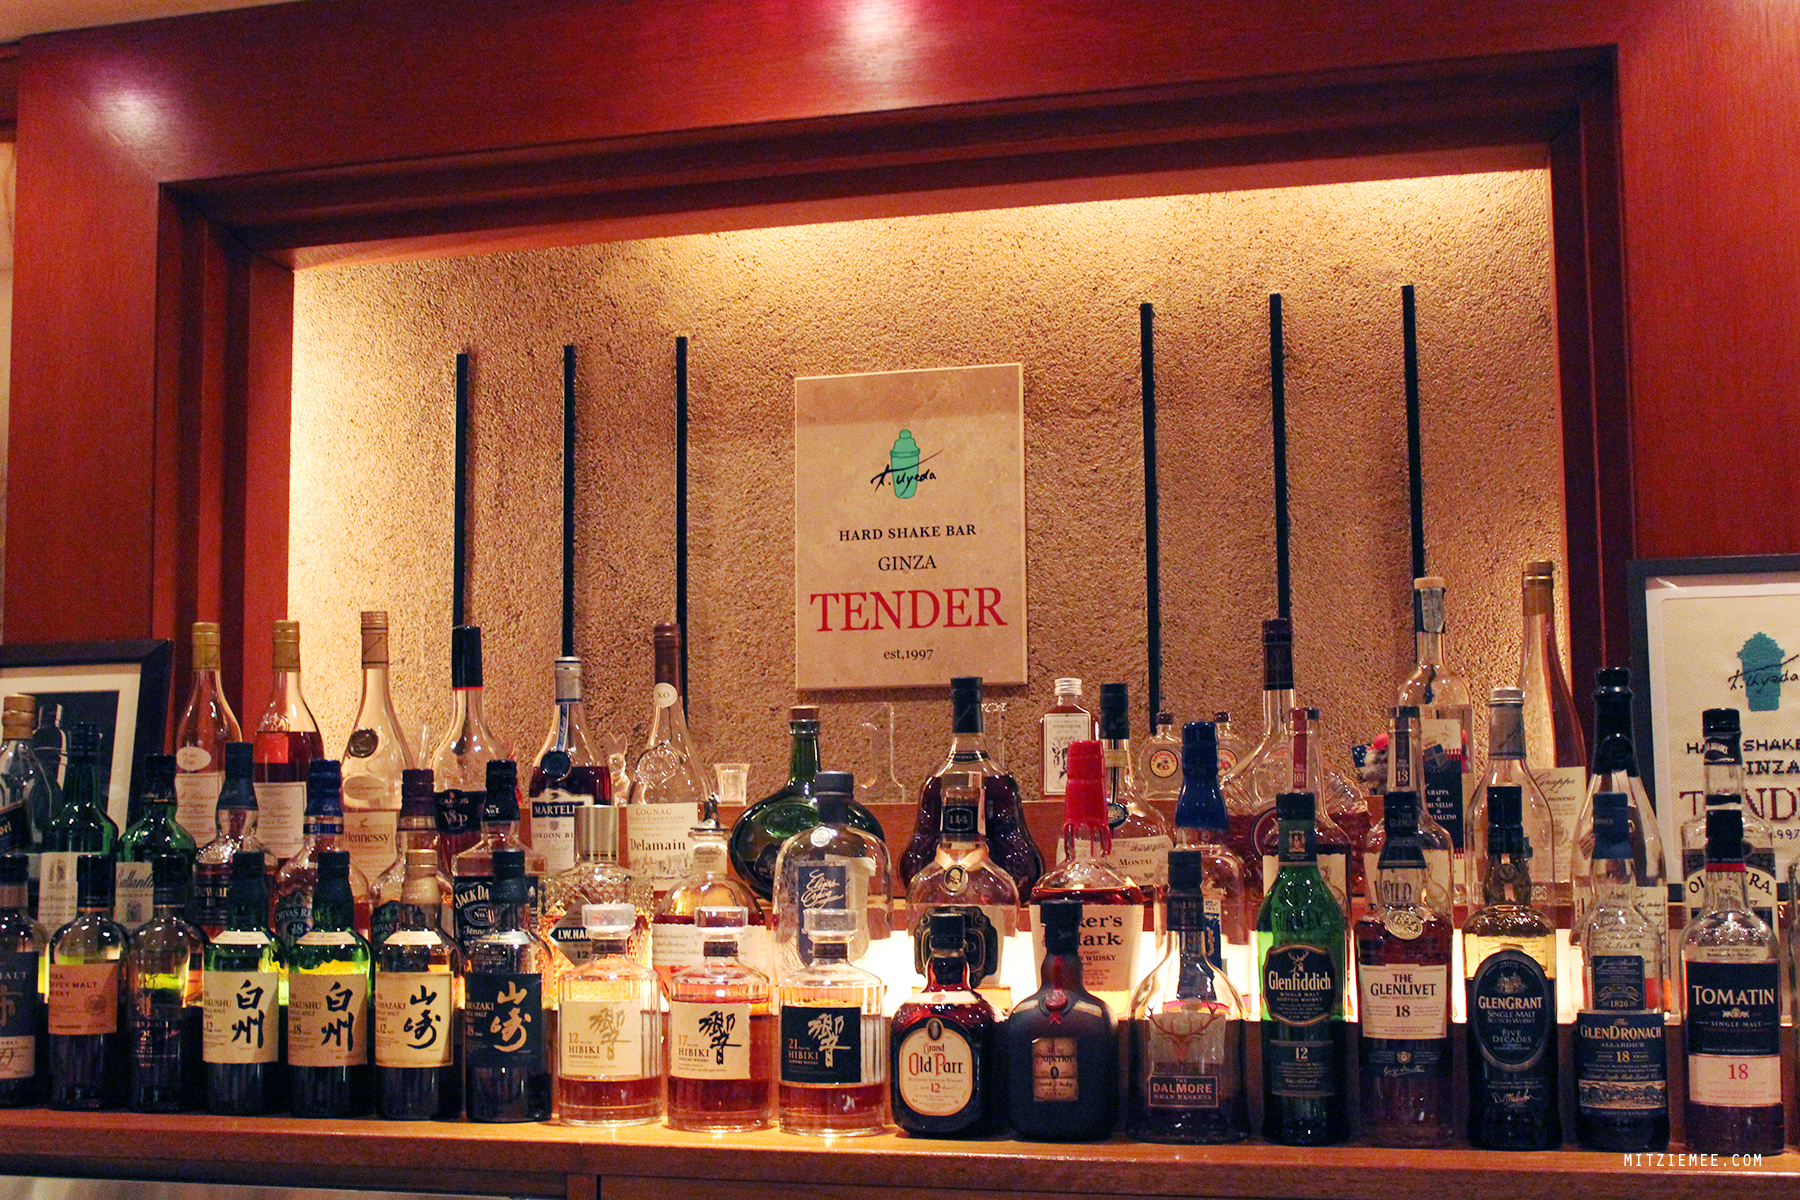 Tender Bar, Ginza, Tokyo